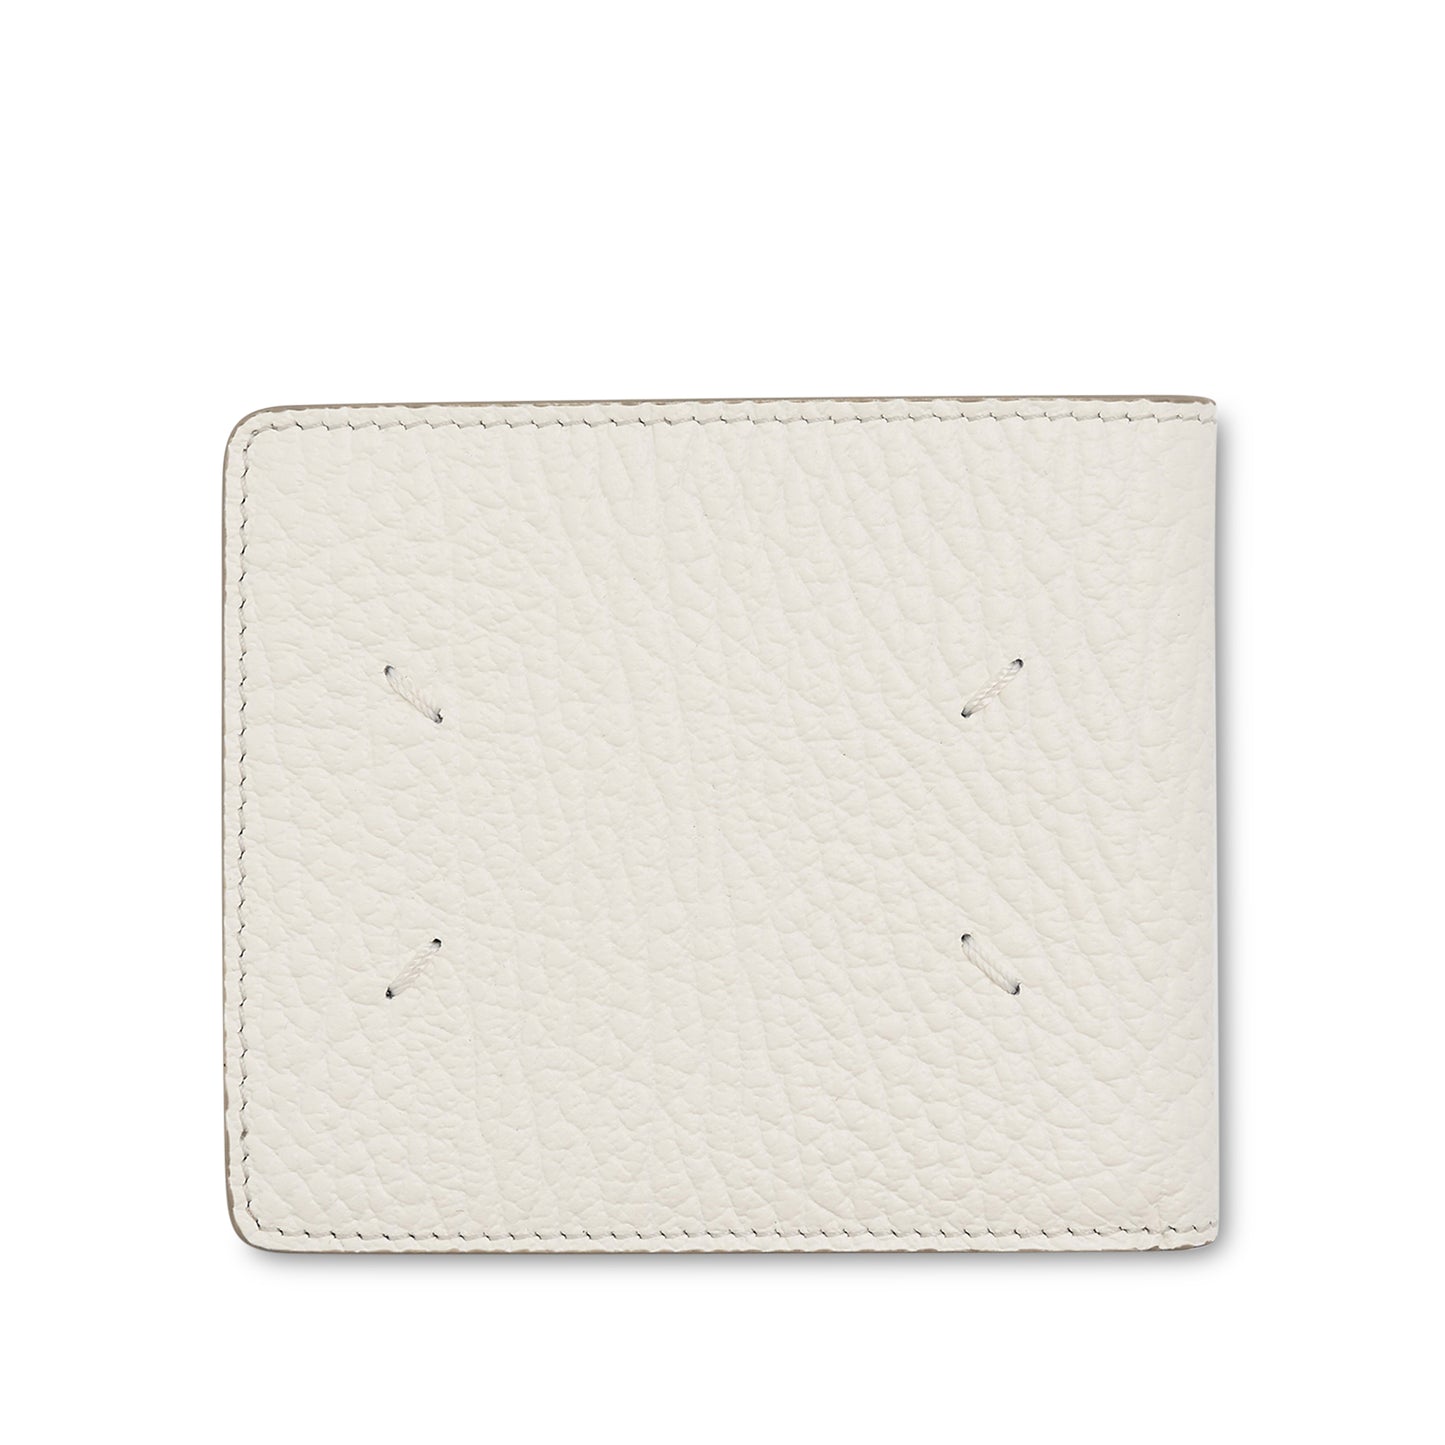 4 Stitch Bifold Wallet in White